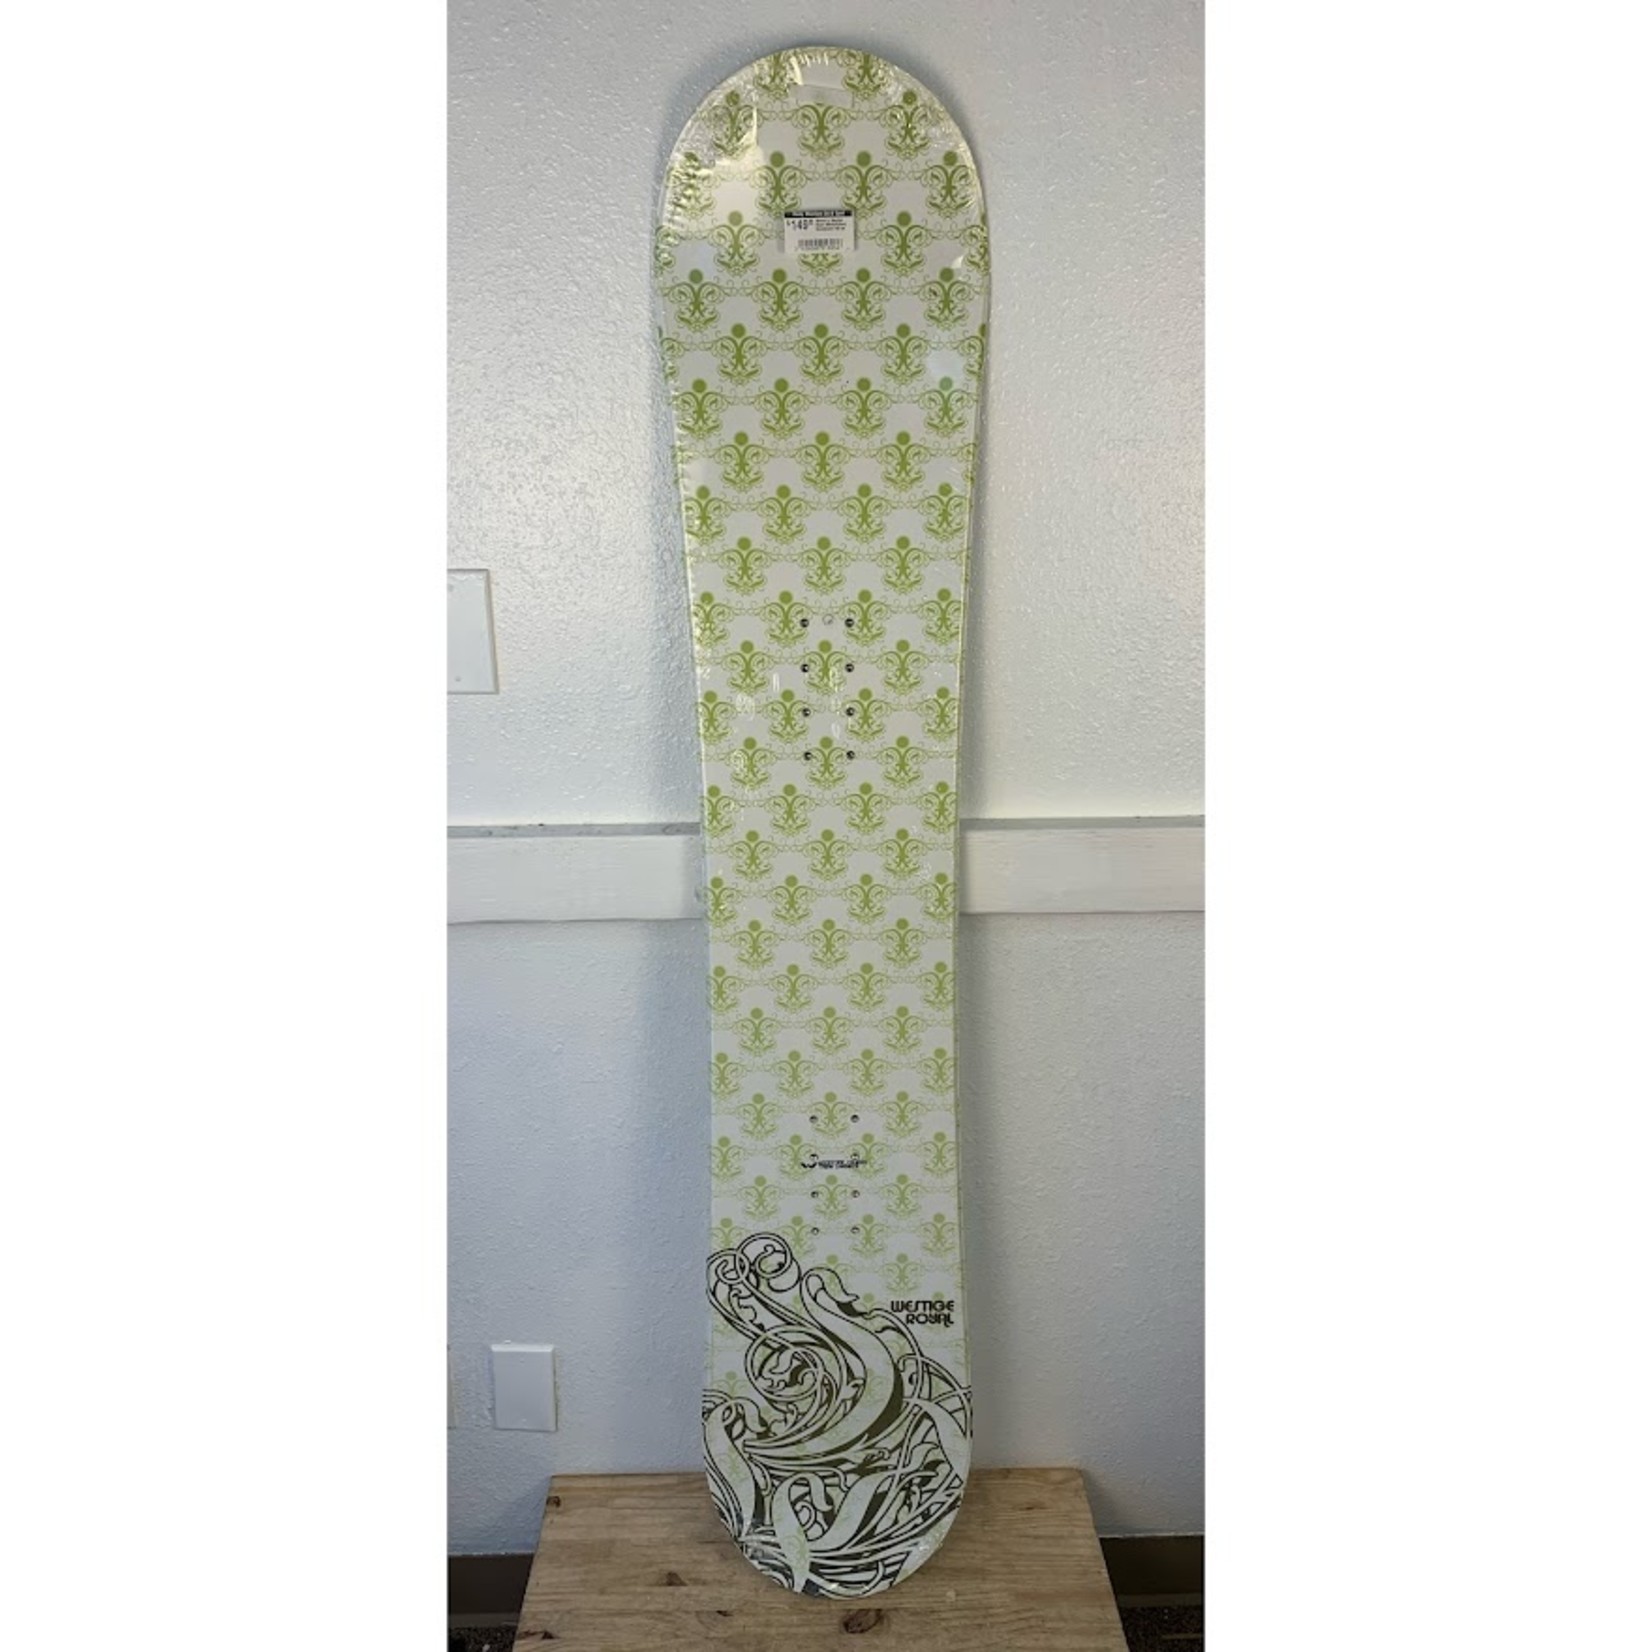 Women's Westige Royal (White/Green) Snowboard (150 cm)